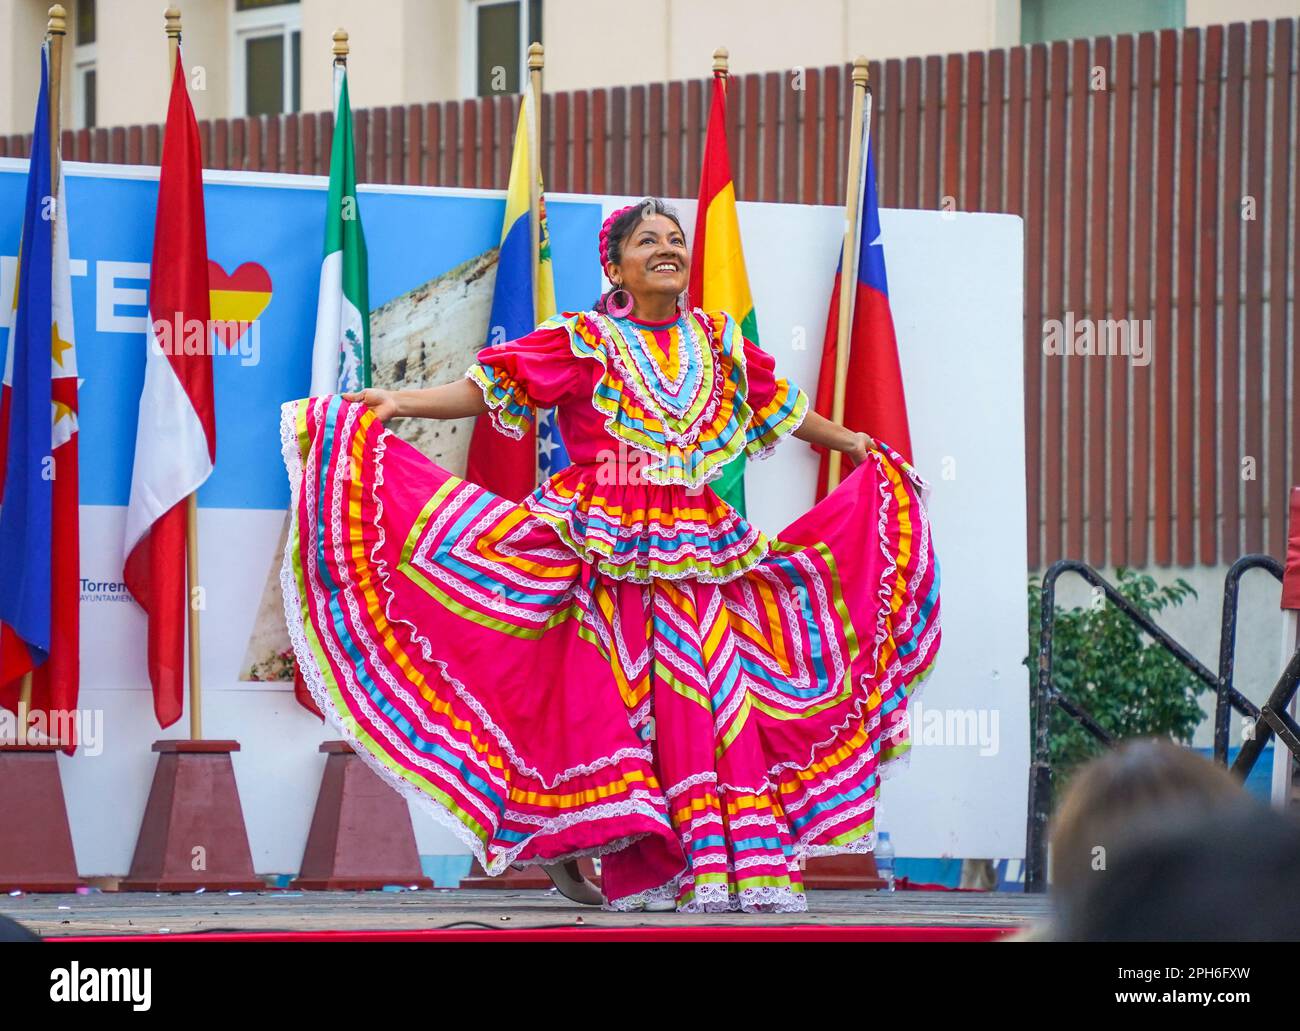 Torremolinos. Femme exécutant la danse traditionnelle sud-américaine, Torremolinos, dia del residente, événement multiculturel, Costa del sol, Espagne. Banque D'Images